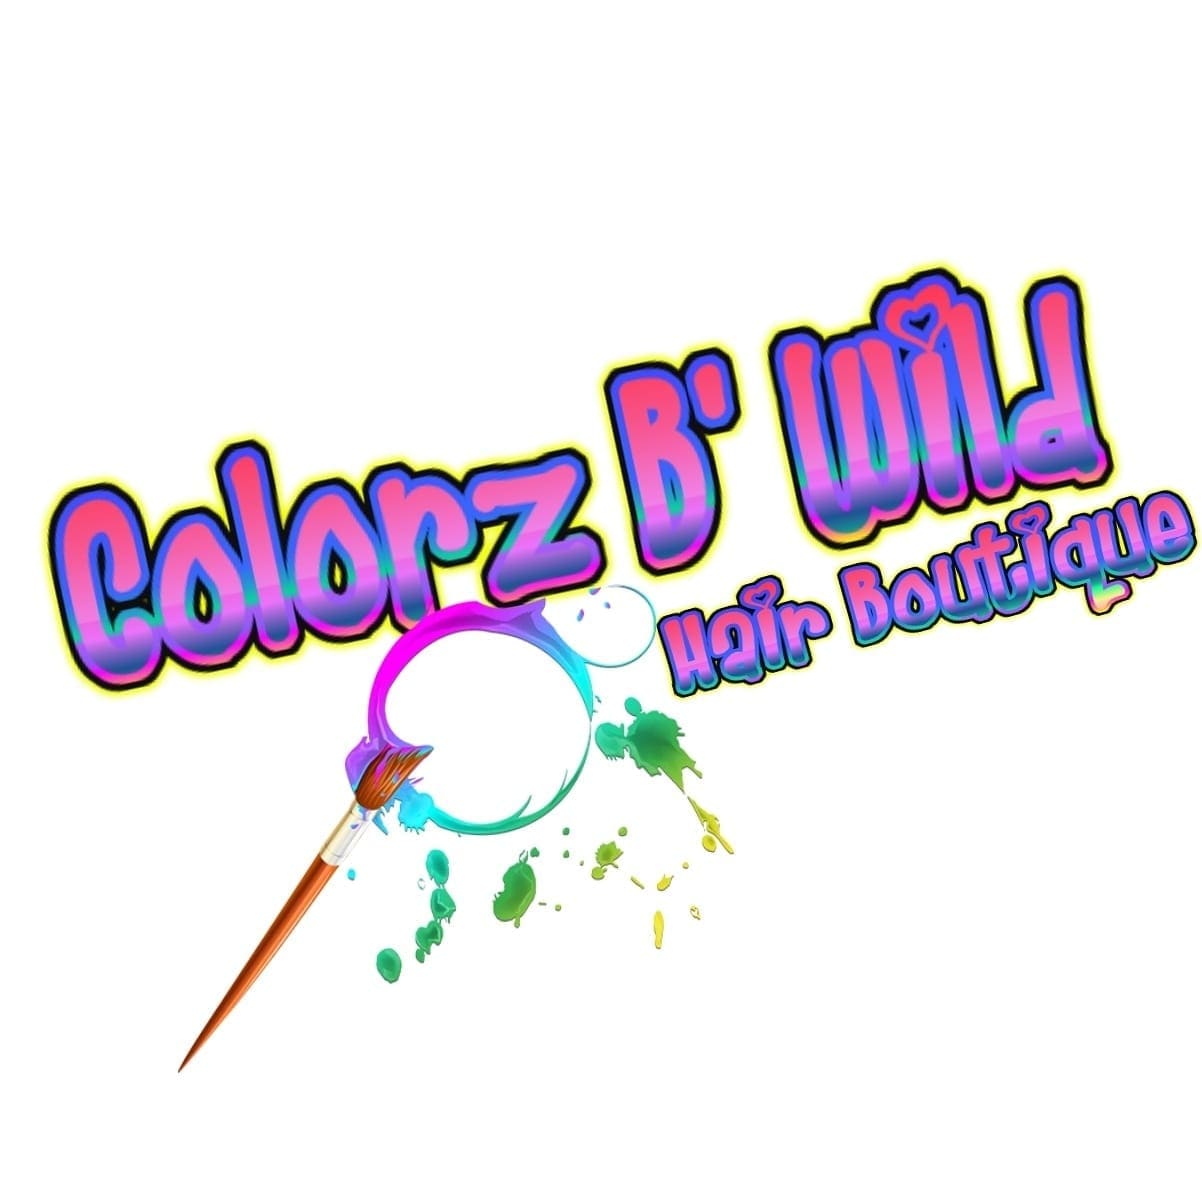 Colorz B' Wild